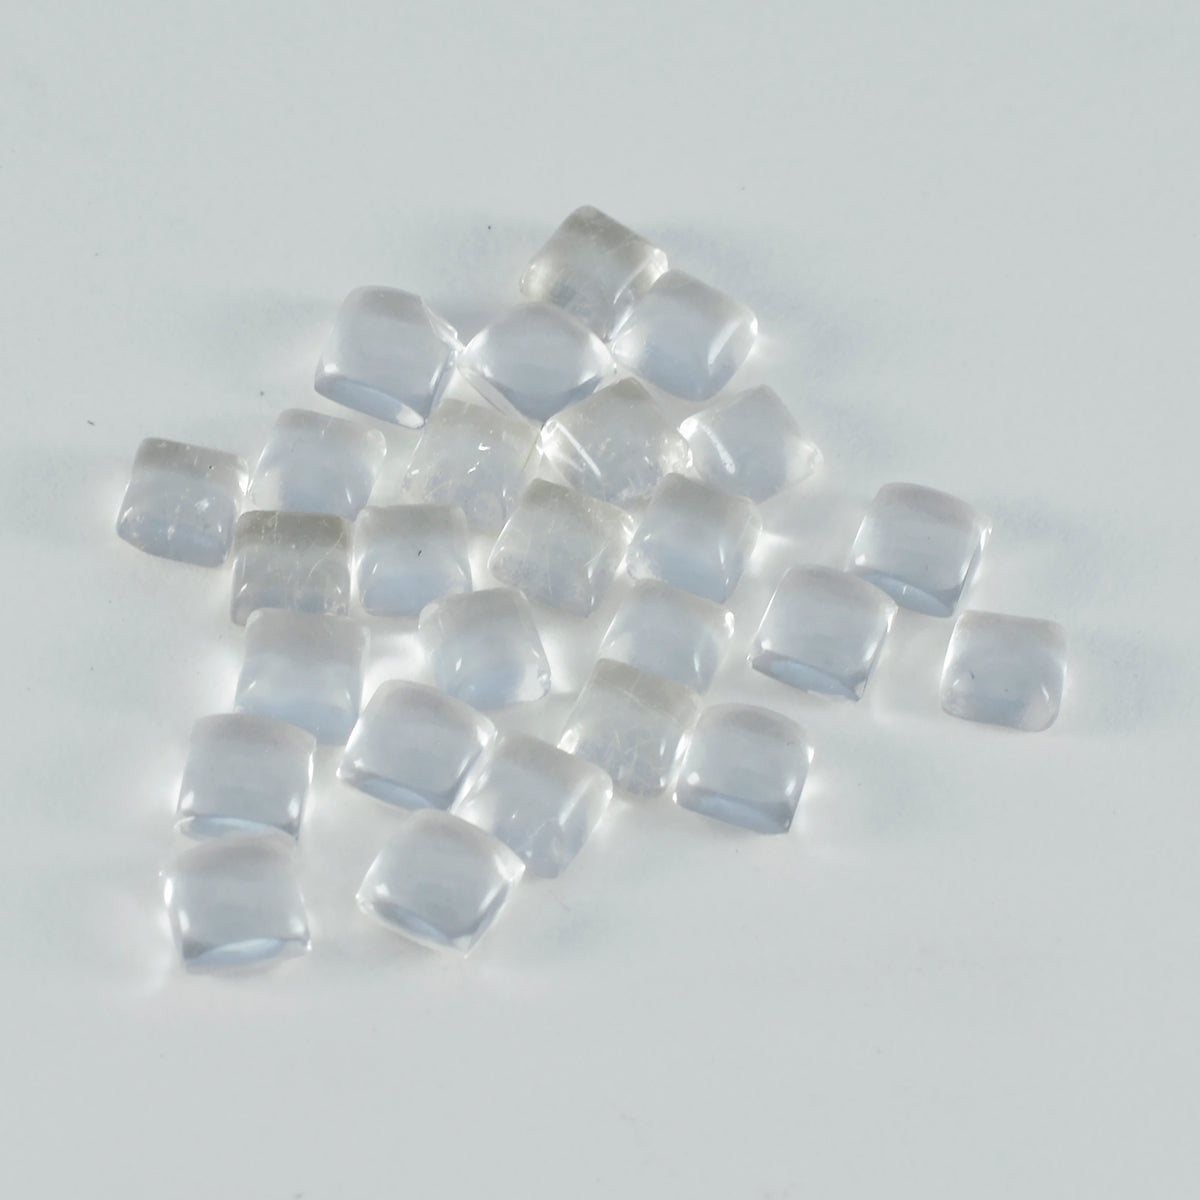 riyogems 1pc cabochon di quarzo di cristallo bianco 5x5 mm gemme di qualità dall'aspetto gradevole di forma quadrata